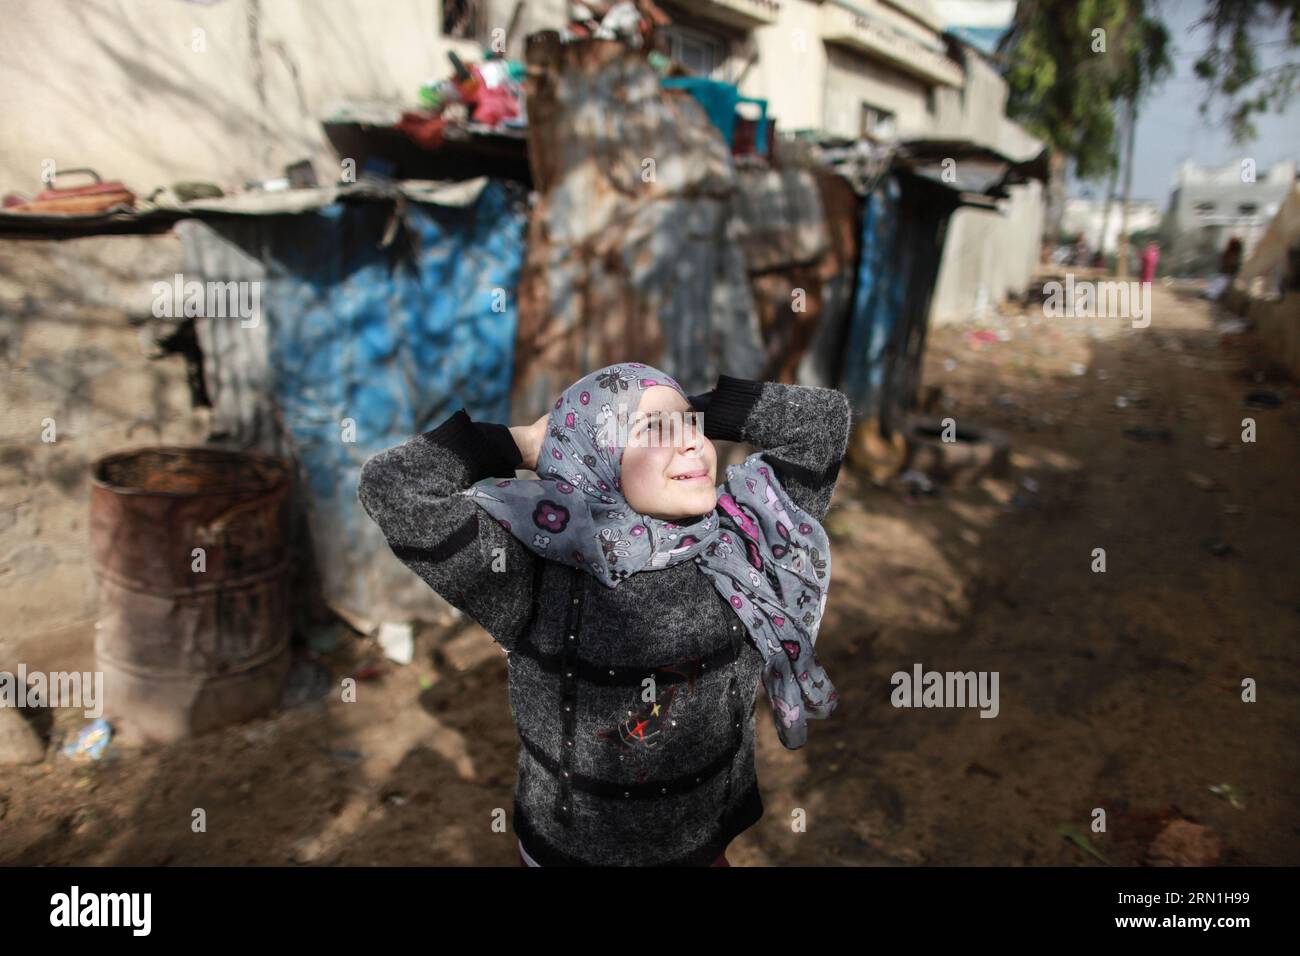 GAZA, 1 gennaio 2015 -- Una ragazza gioca in un quartiere povero nel nord della città di Beit Lahiya nella Striscia di Gaza il 1 gennaio 2015. Recenti statistiche della Federazione generale palestinese dei sindacati (PGFTU) hanno rivelato che la disoccupazione a Gaza è di 200.000 persone. Sami al-Amasi, presidente del PGFTU a Gaza, ha dichiarato che questo rappresentava un aumento di 30.000 persone da prima dell'ultima guerra con Israele, una situazione che è la peggiore degli ultimi dieci anni . ) (Lyi) MIDEAST-GAZA-LIFE WissamxNassar PUBLICATIONxNOTxINxCHN Gaza 1 gennaio 2015 una ragazza GIOCA in un quartiere colpito dalla povertà nella città settentrionale della Striscia di Gaza Foto Stock